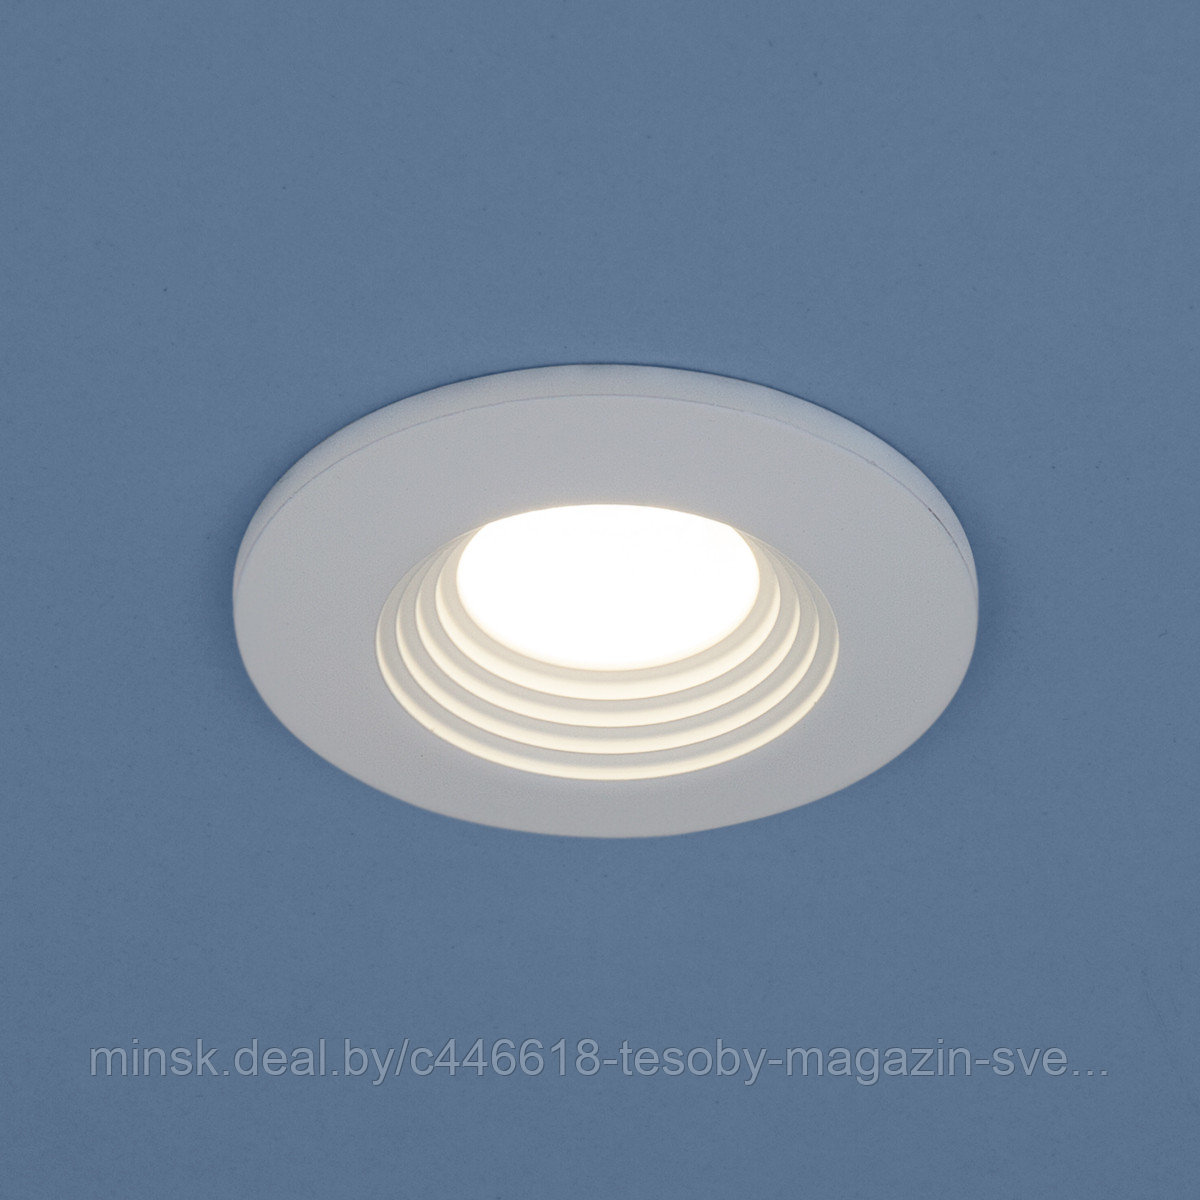 Точечный светодиодный светильник 9903 LED 3W COB WH белый (немецкое качество) 